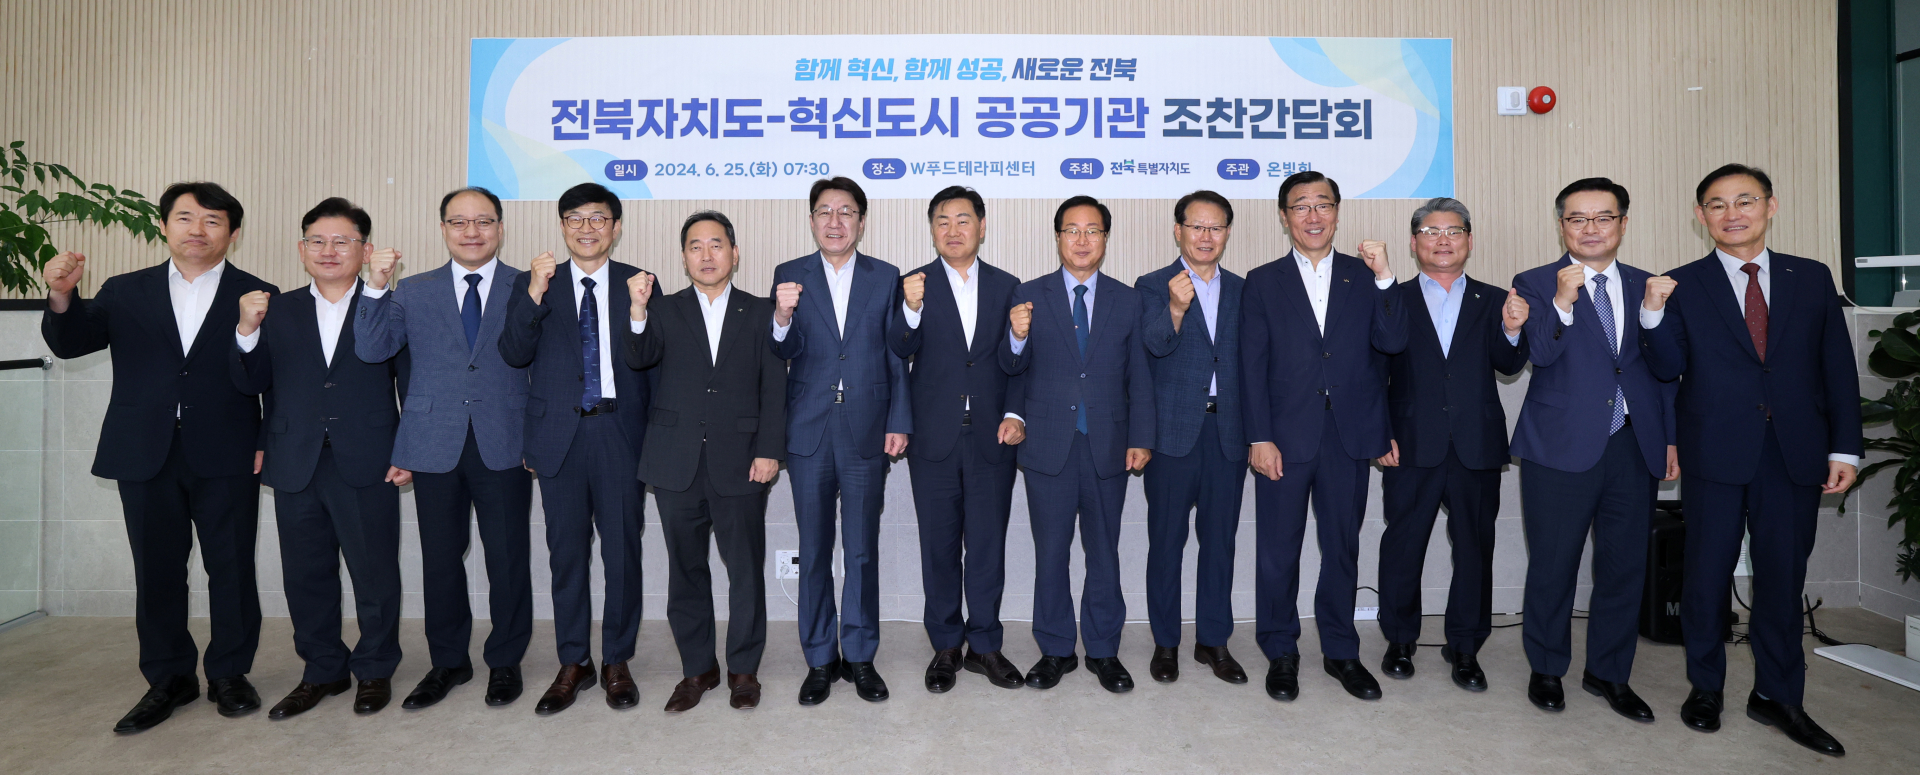 전북자치도, 혁신도시 공공기관장 모임 '온빛회' 개최